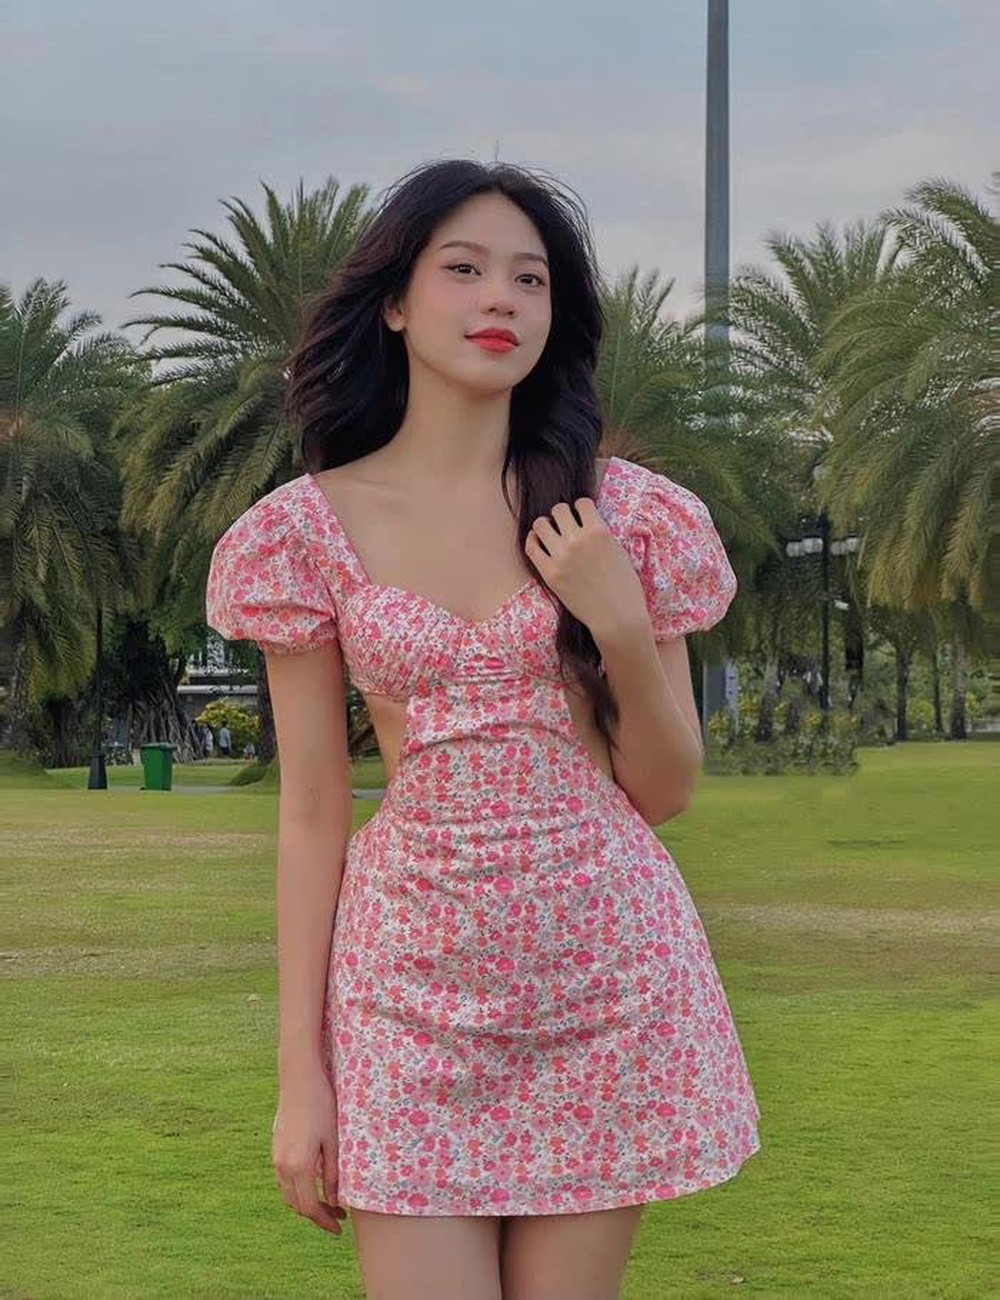 Phương Nhi và loạt ảnh xinh chuẩn thần tiên tỷ tỷ: Đẹp át cả Hoa hậu Việt Nam khi đụng hàng, ảnh cam thường gây bão - Ảnh 2.